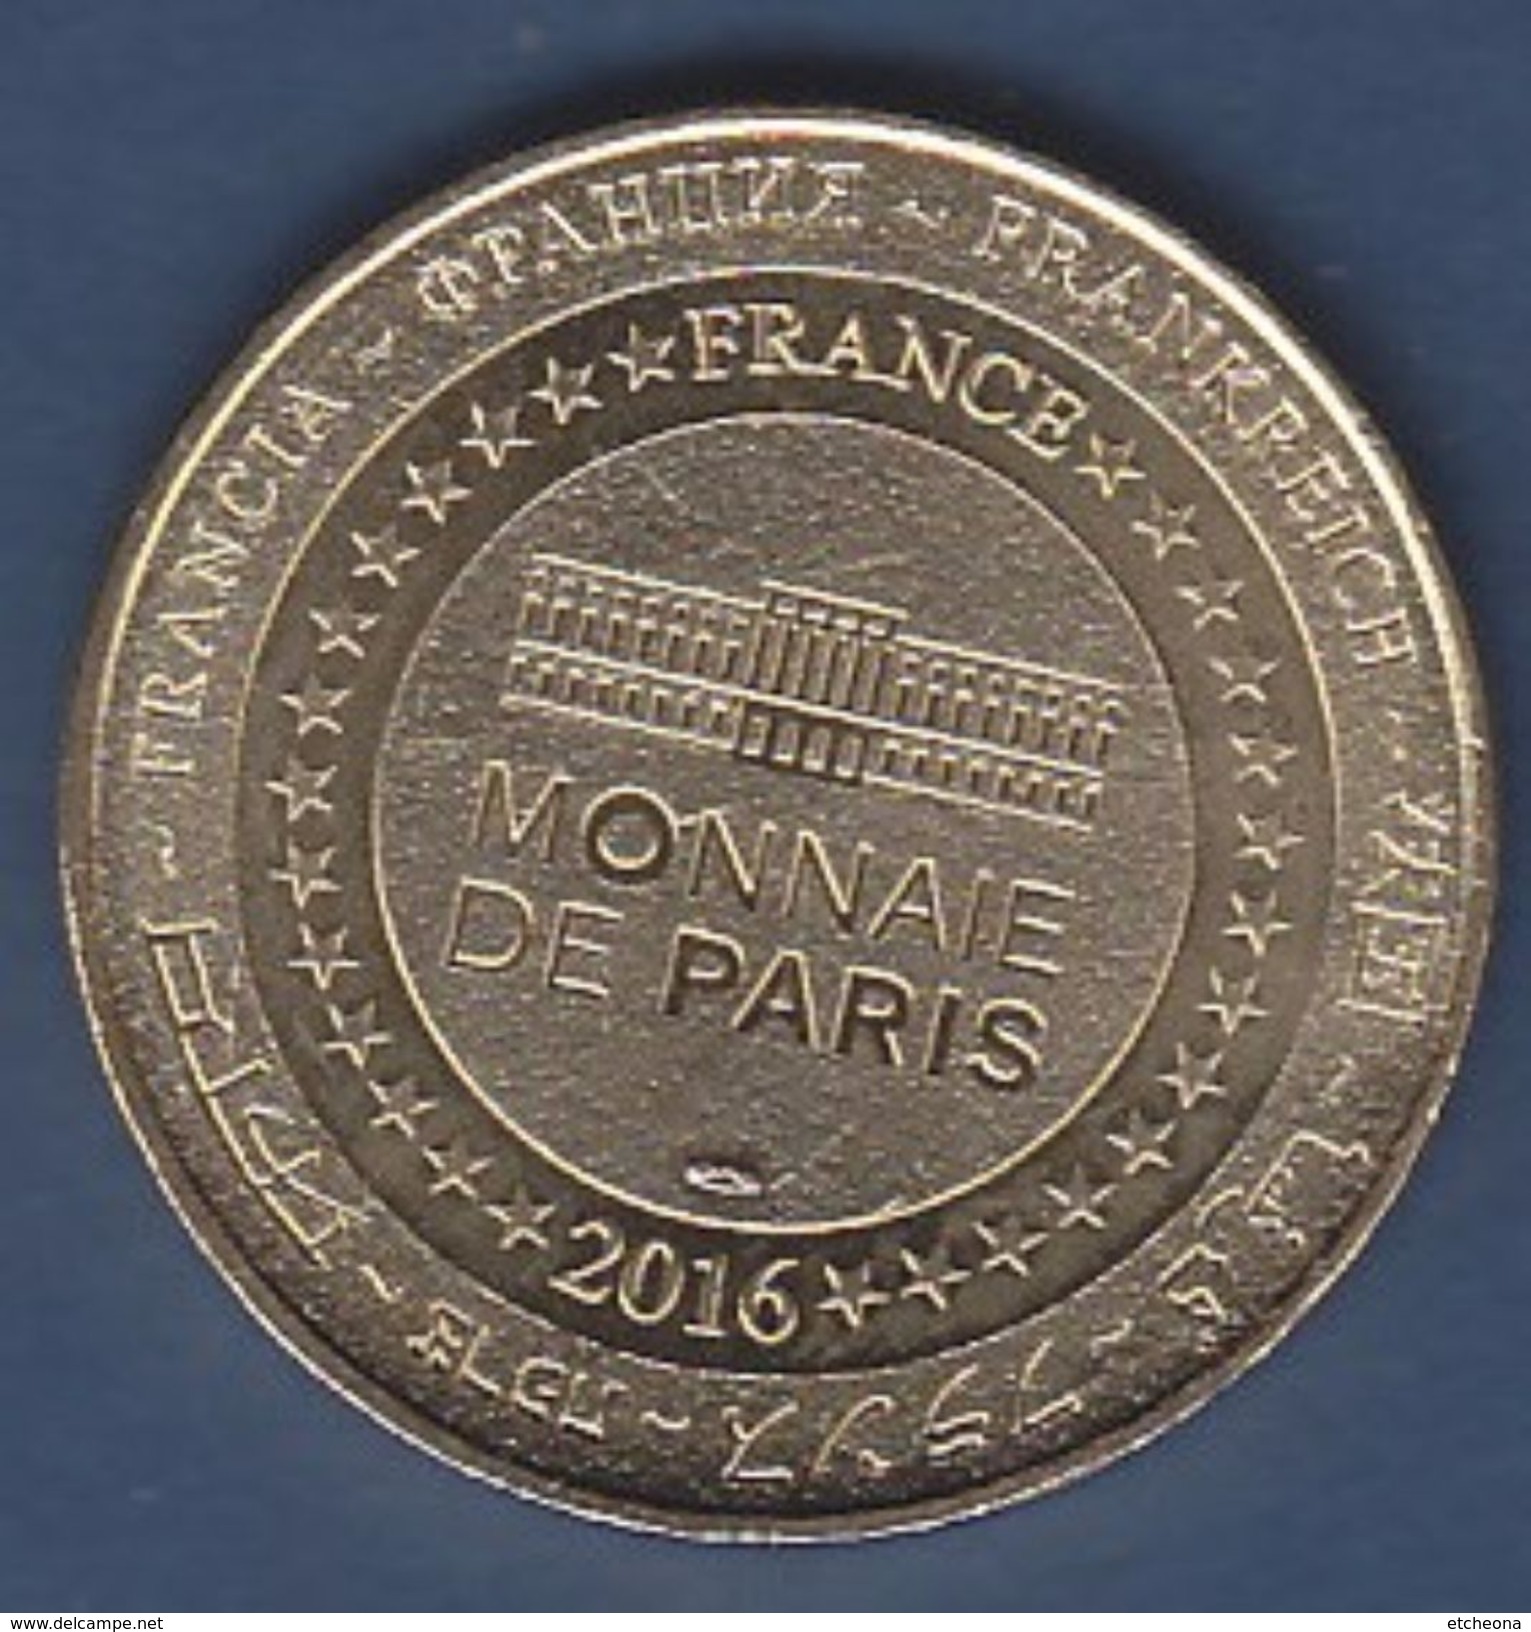 Jeton 2016 Le Futuroscope Imagic Bertran Lotth Jeton Médaille Touristique Monnaie De Paris - 2016